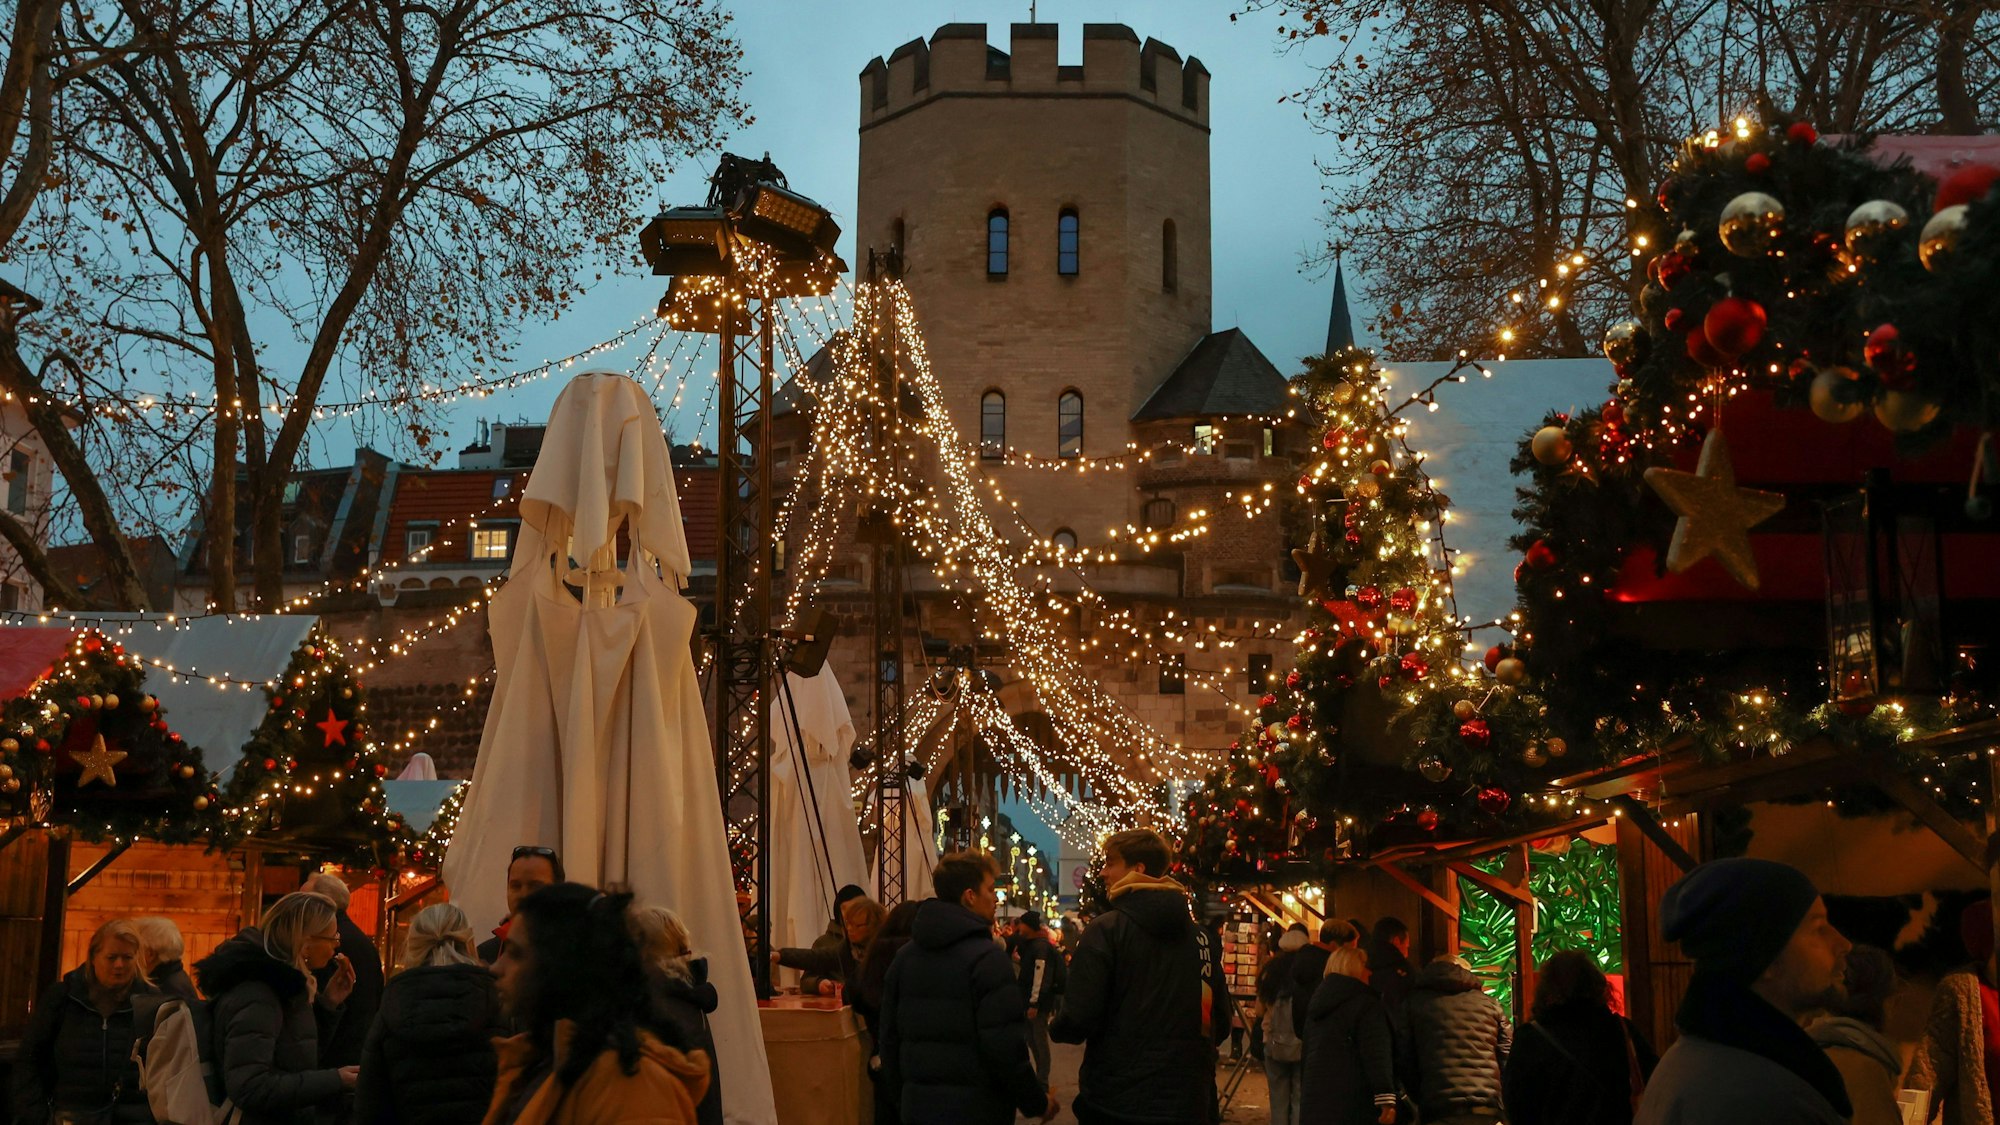 Der Weihnachtsmarkt im Drehkreuz der Südstadt, dem Chlodwigplatz, ist klein, macht im Advent den historischen Platz vor der Severinstorburg zu einem Holzhaus-Dörfchen mitten in Köln.



